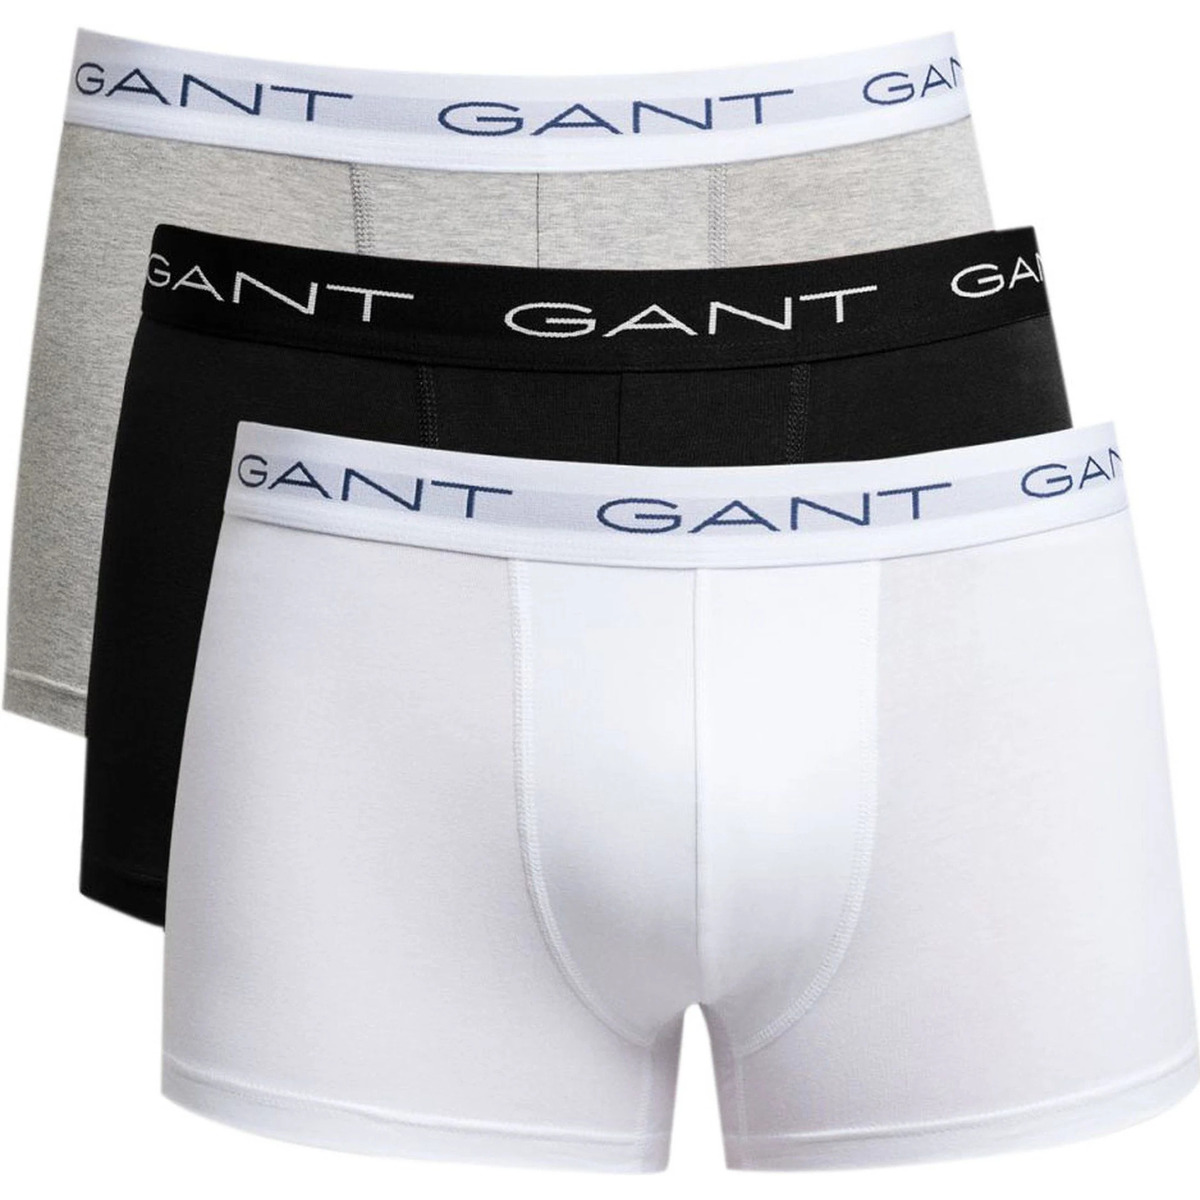 Gant Noir Boxer-shorts Lot de 3 Trunk Multicolores 5kff